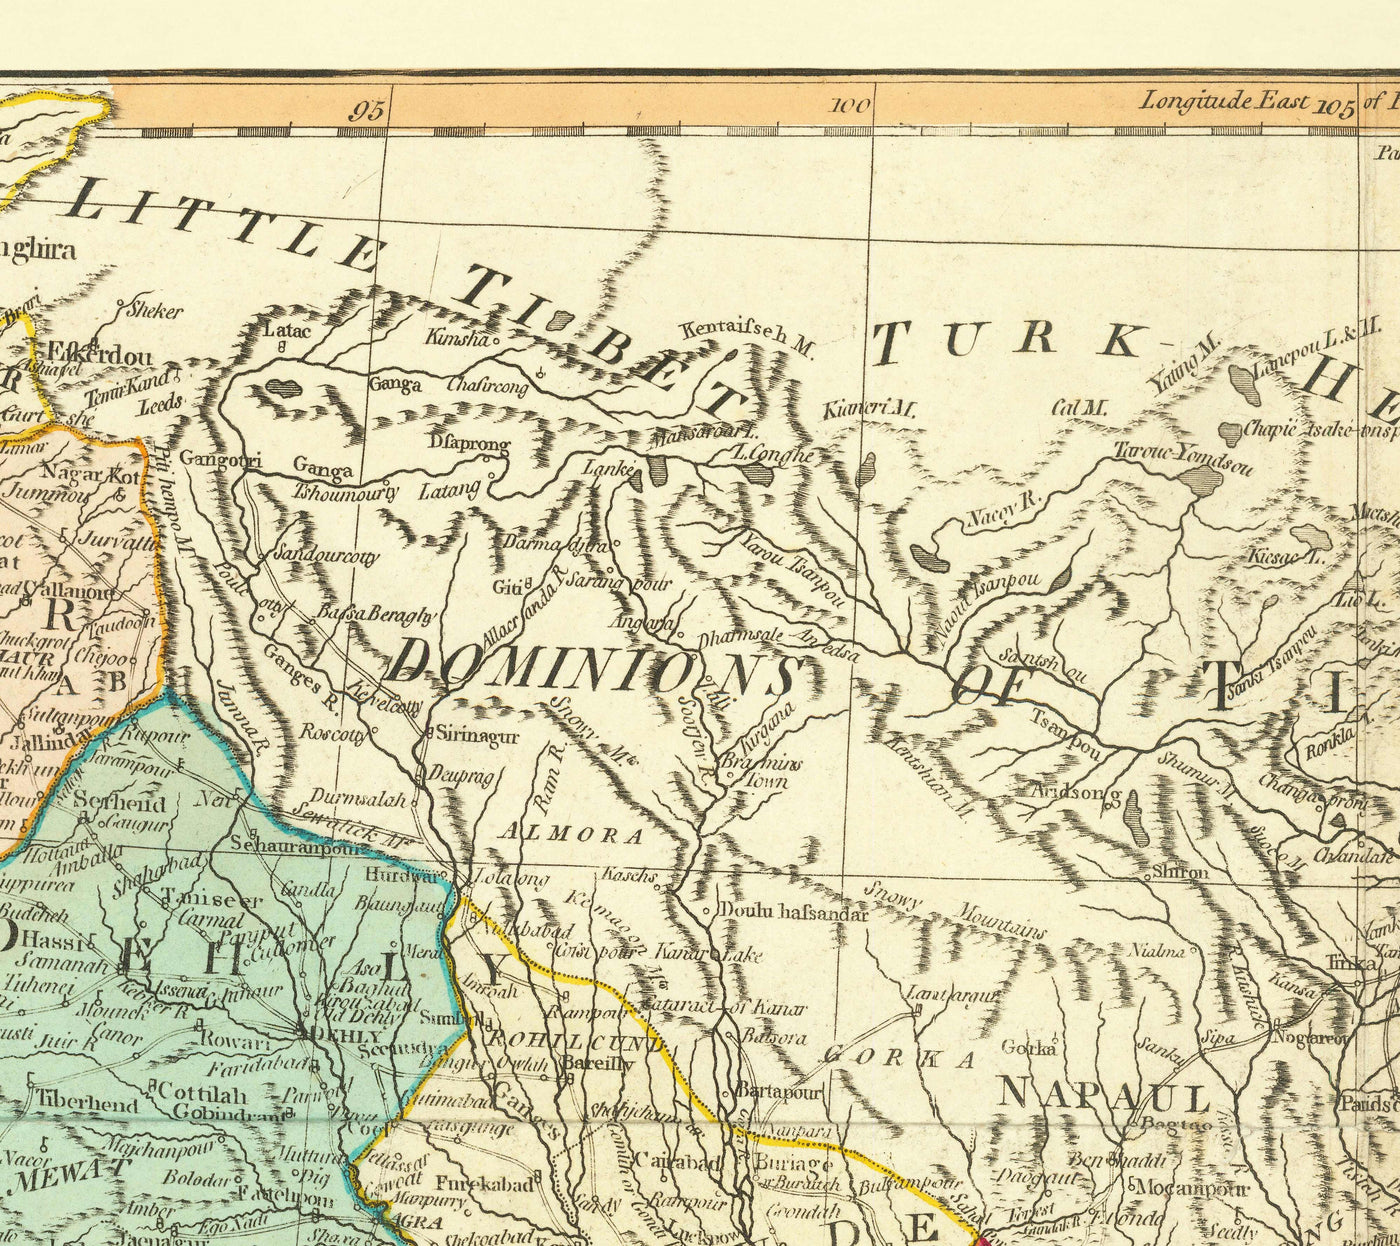 Antiguo mapa de las Indias Orientales, 1794 - India, Indostán, China, Vietnam, Tailandia, Siam, Birmania, Malasia, Vietnam, Pegu